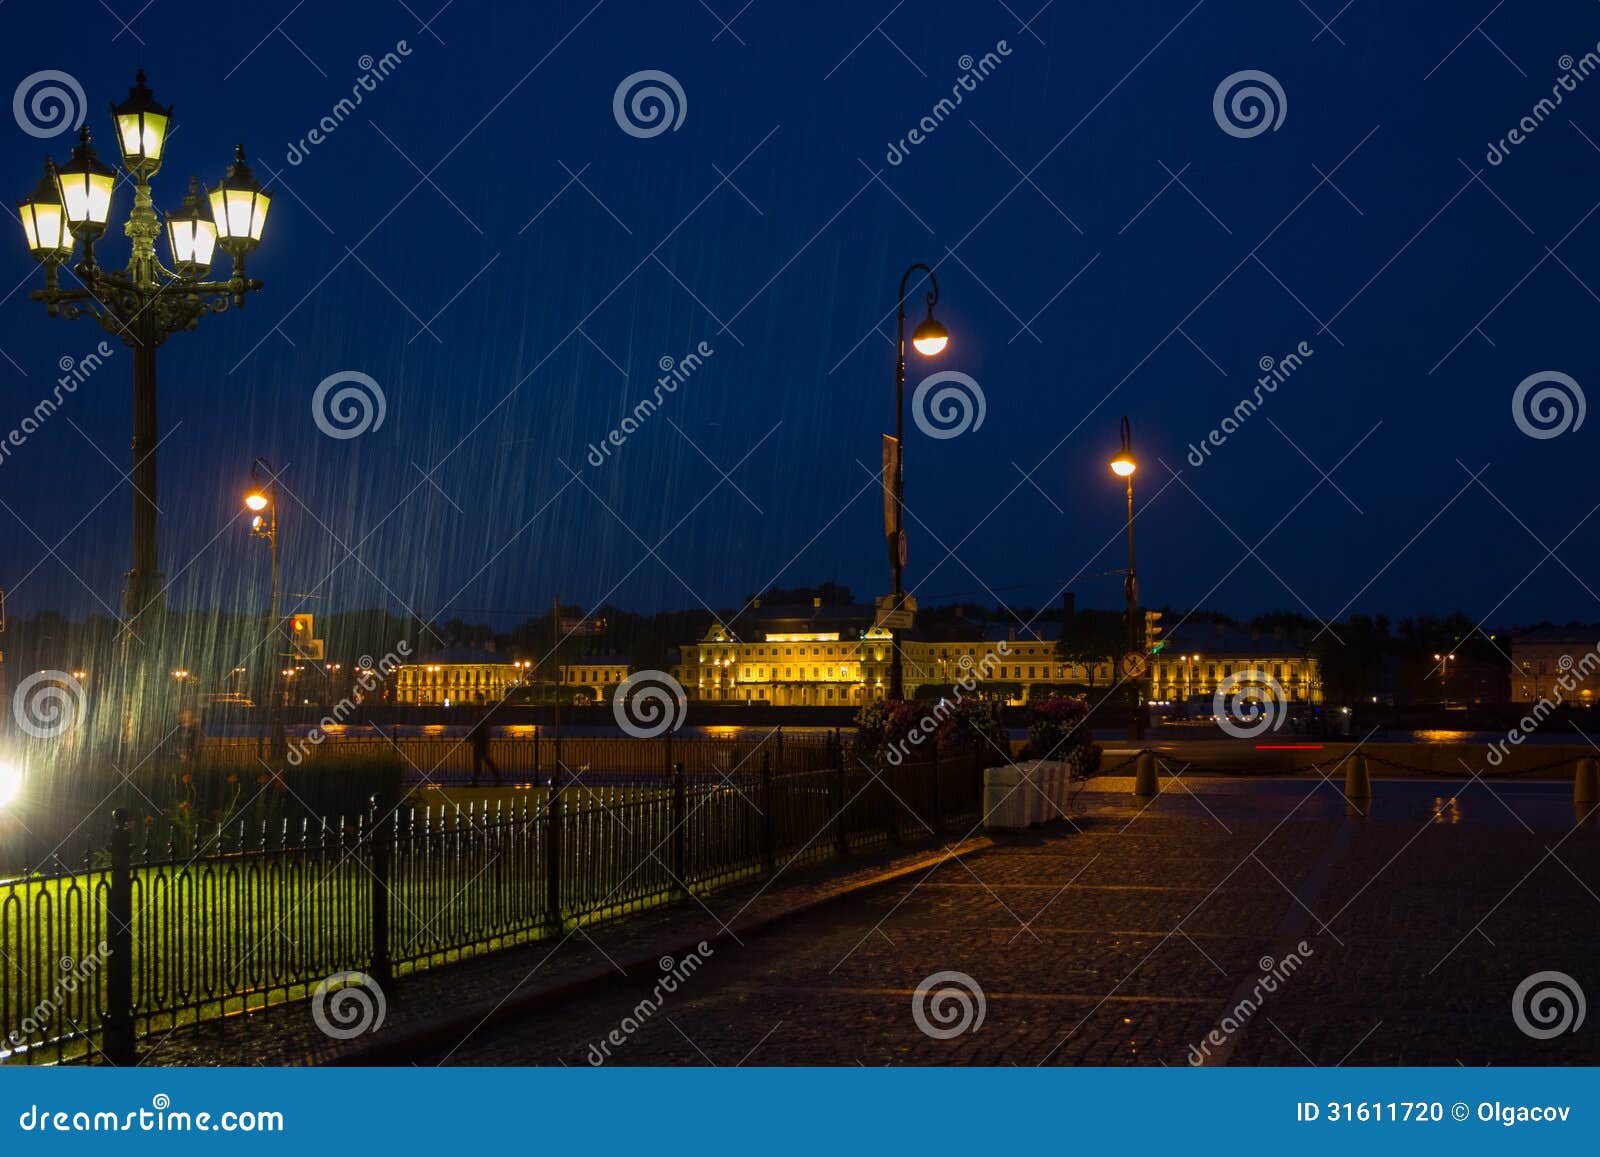 rainy night in st. petersburg, russia